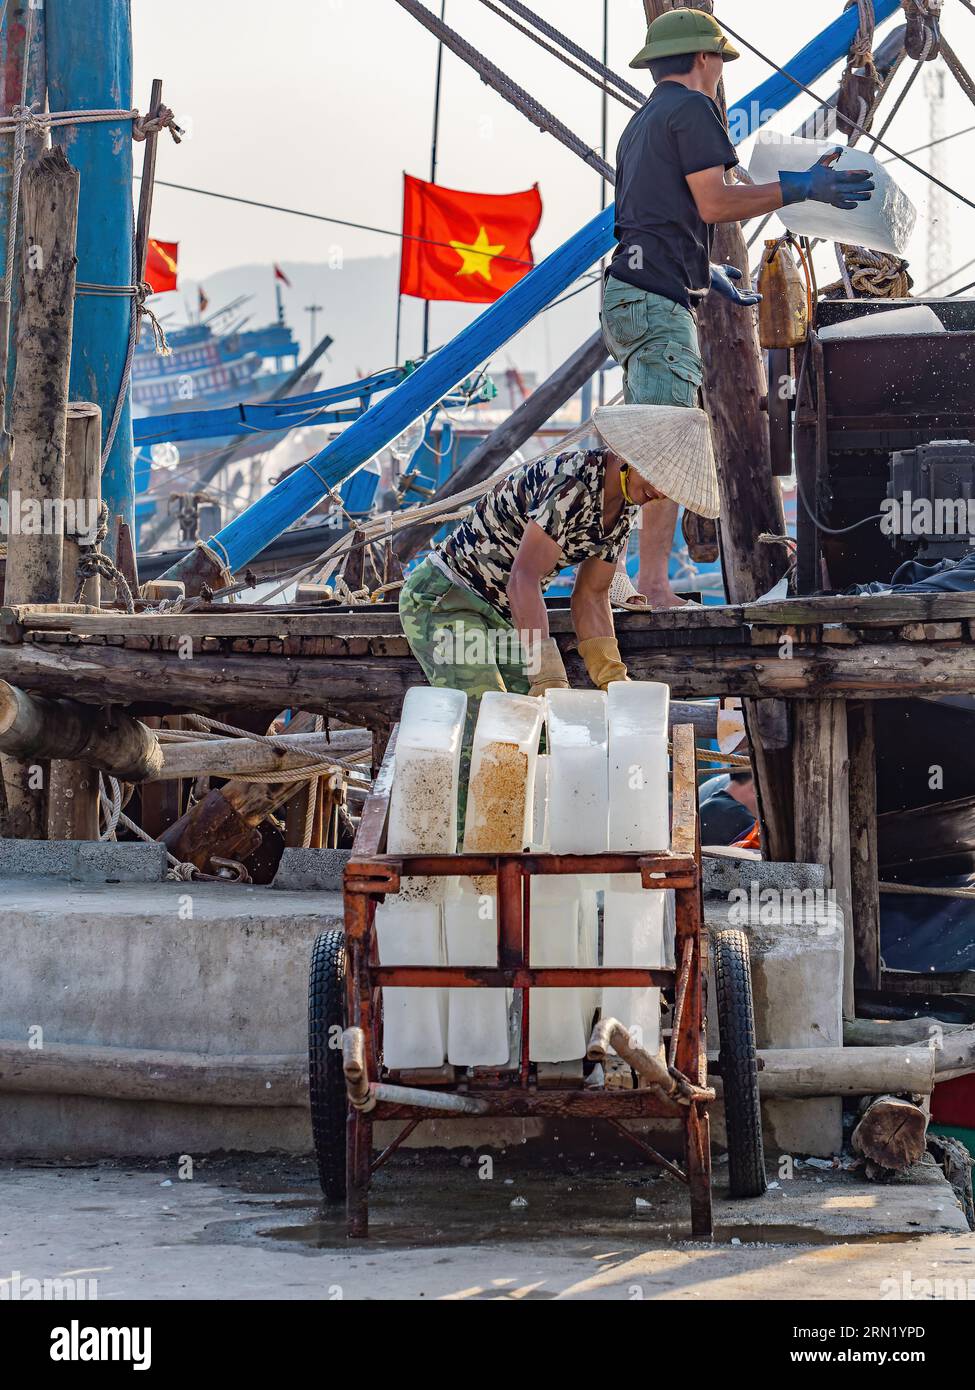 Des blocs de glace sont introduits dans un concasseur lors de la livraison à des bateaux de pêche à Hai Thanh, un village de pêcheurs dans la province de Thanh Hoa au Vietnam. Banque D'Images